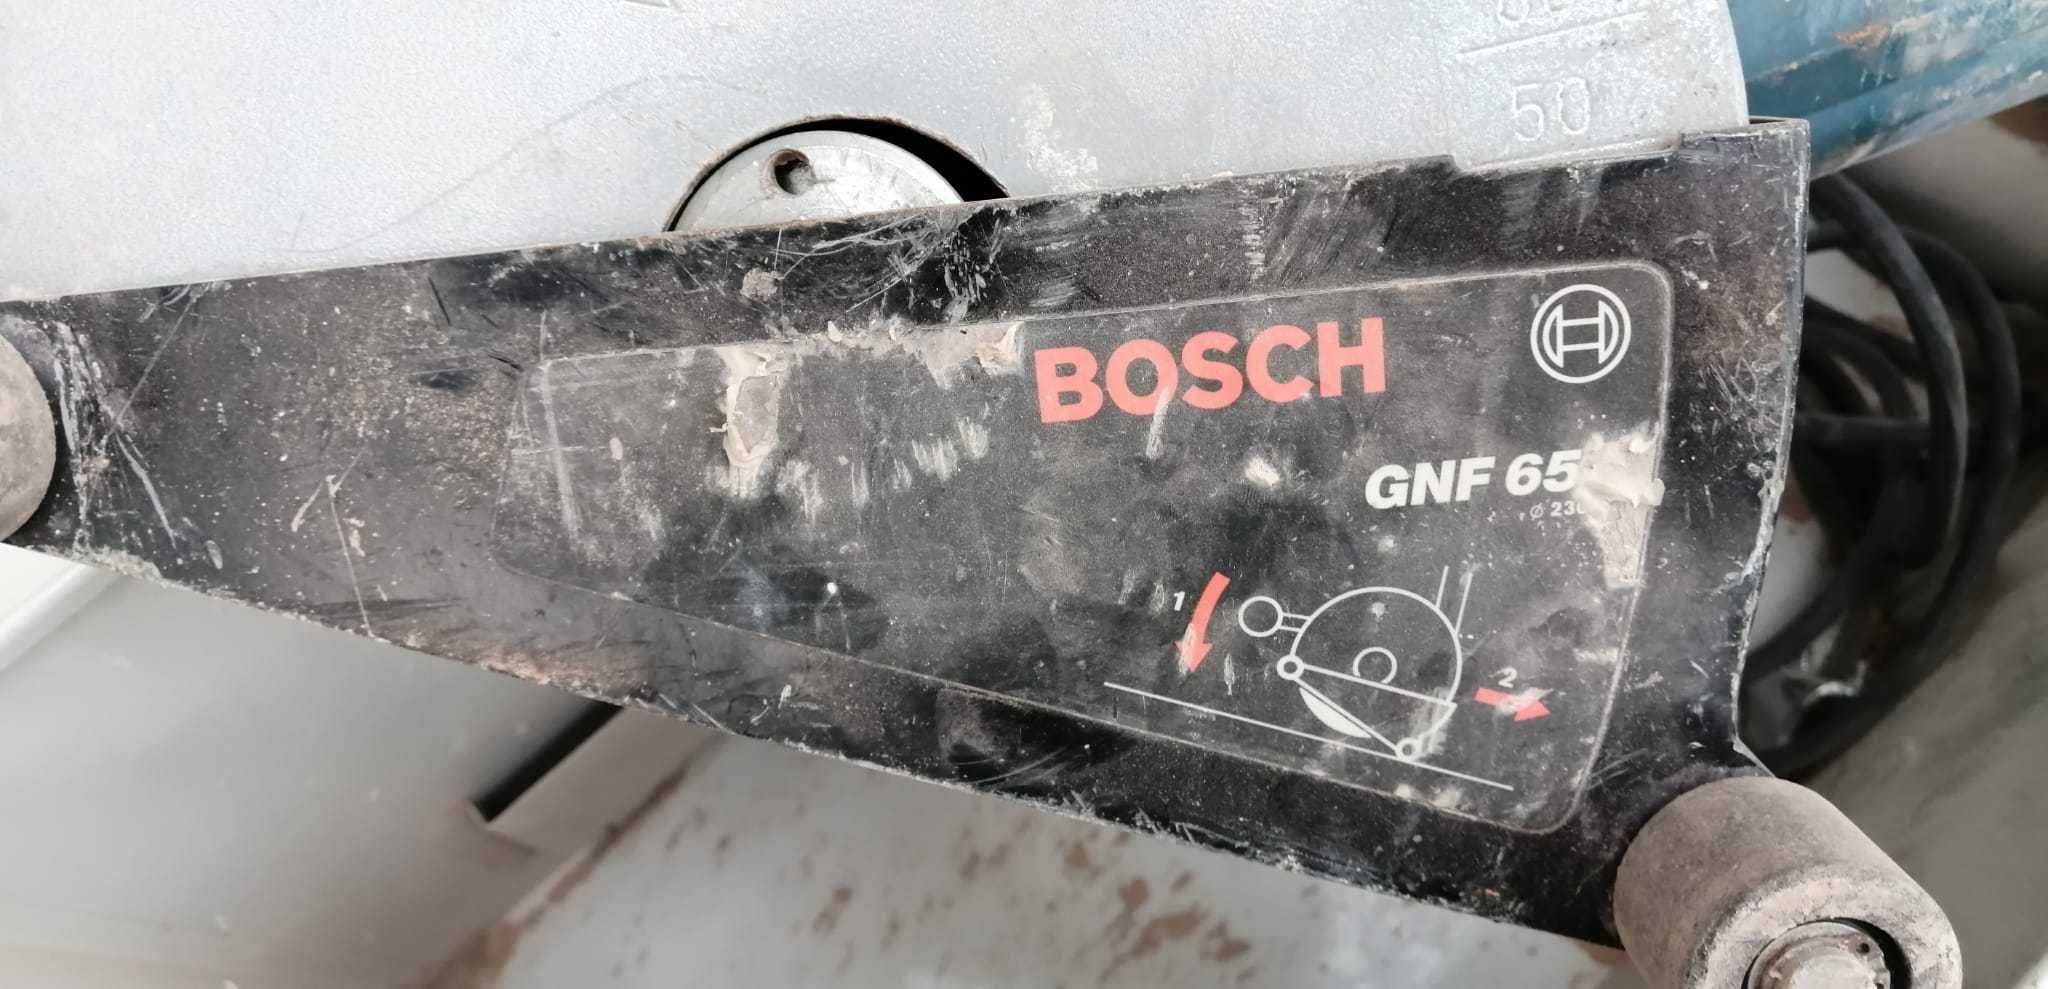 Бороздодел Bosch GNF 65
2400-ваттный штроборез